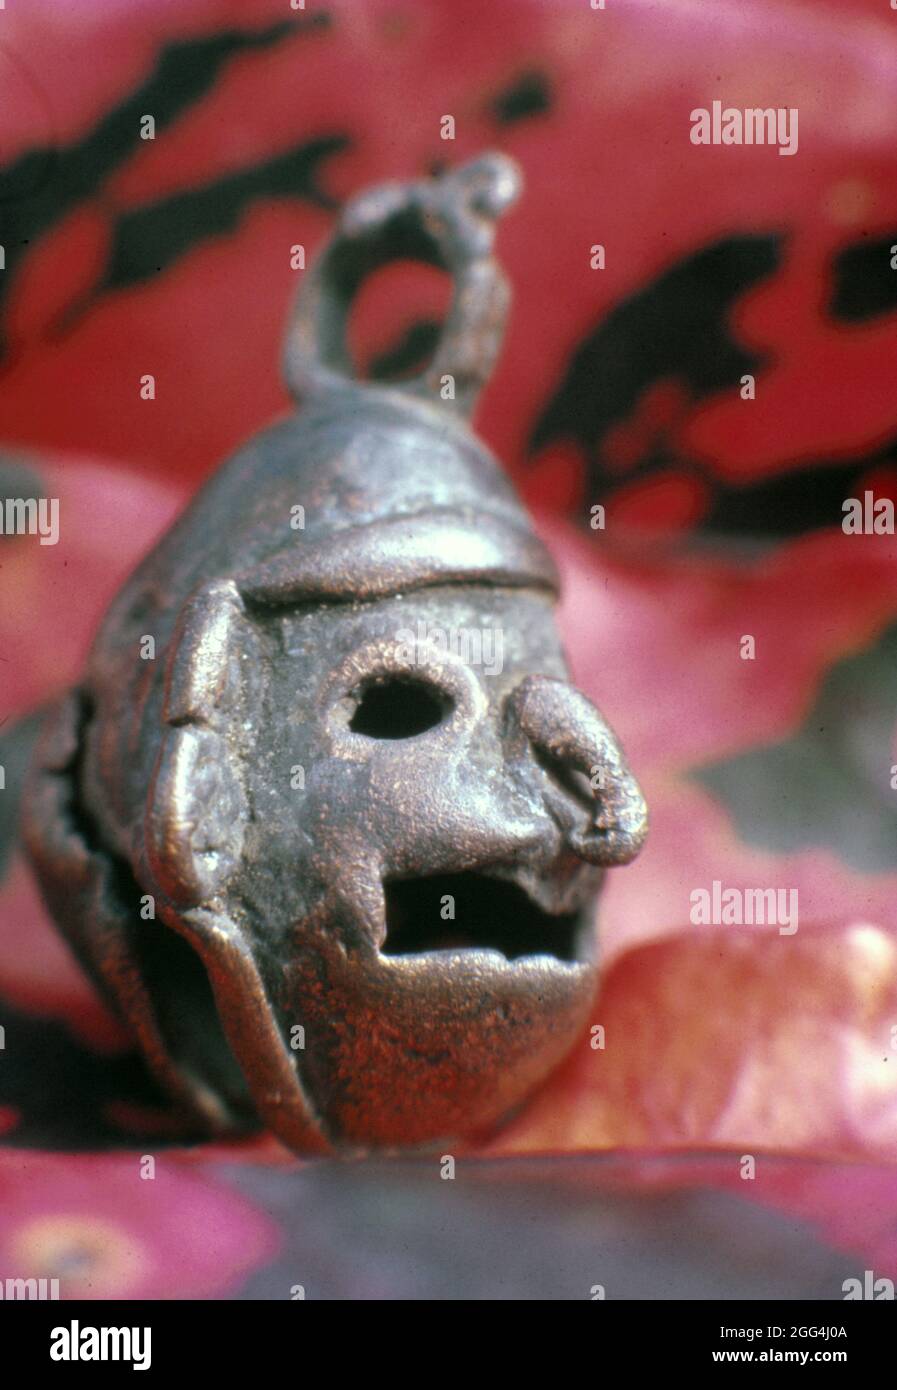 Figurina metallica recuperata dal cenote sacro a Chichen Itza dalla squadra archeologica del 1967 sotto la guida di Román Piña Chán. Foto Stock